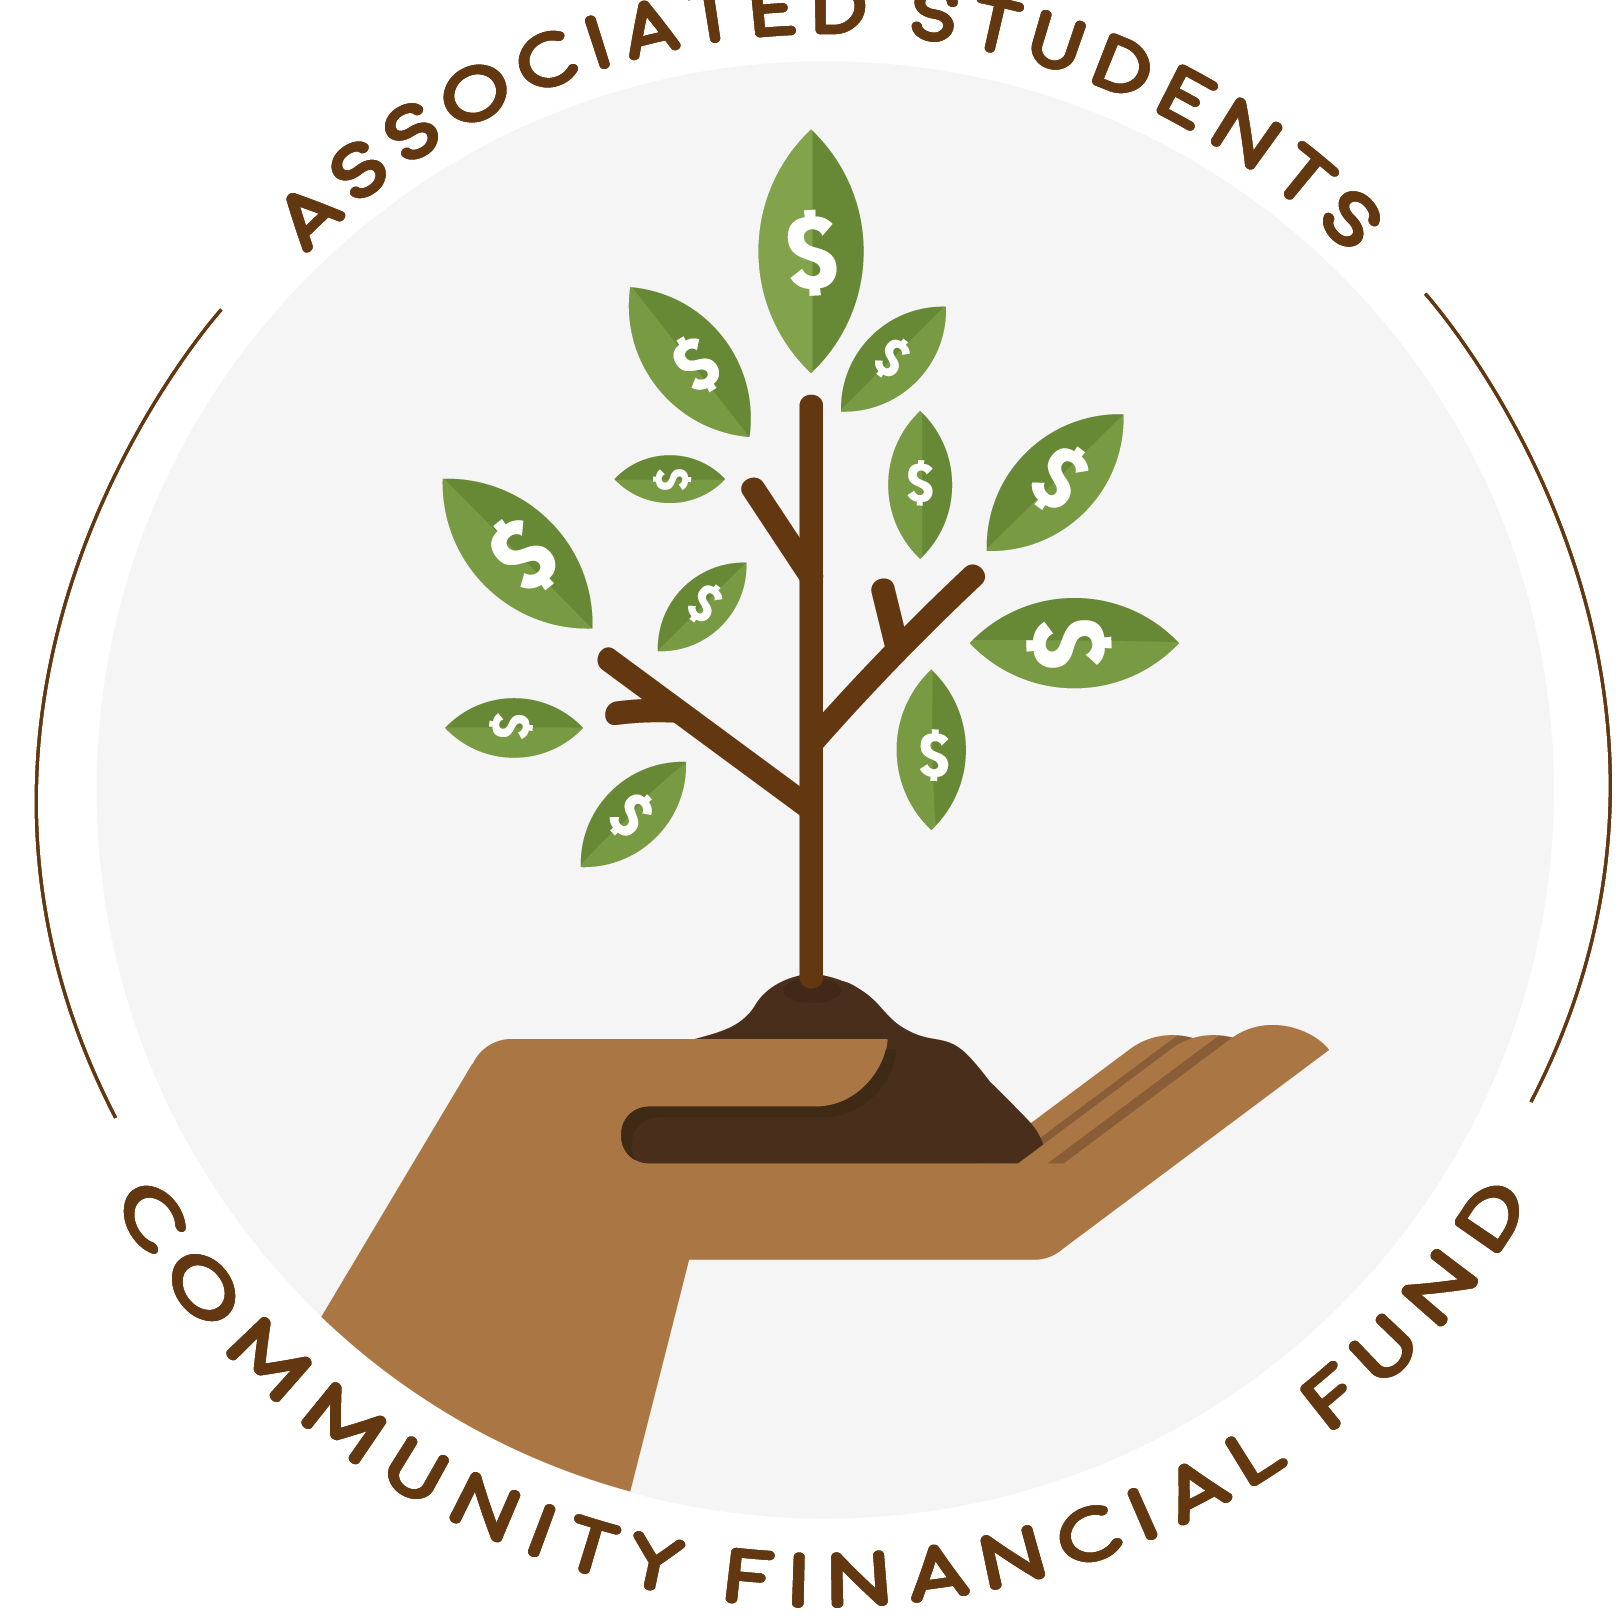 Community Financial Fund